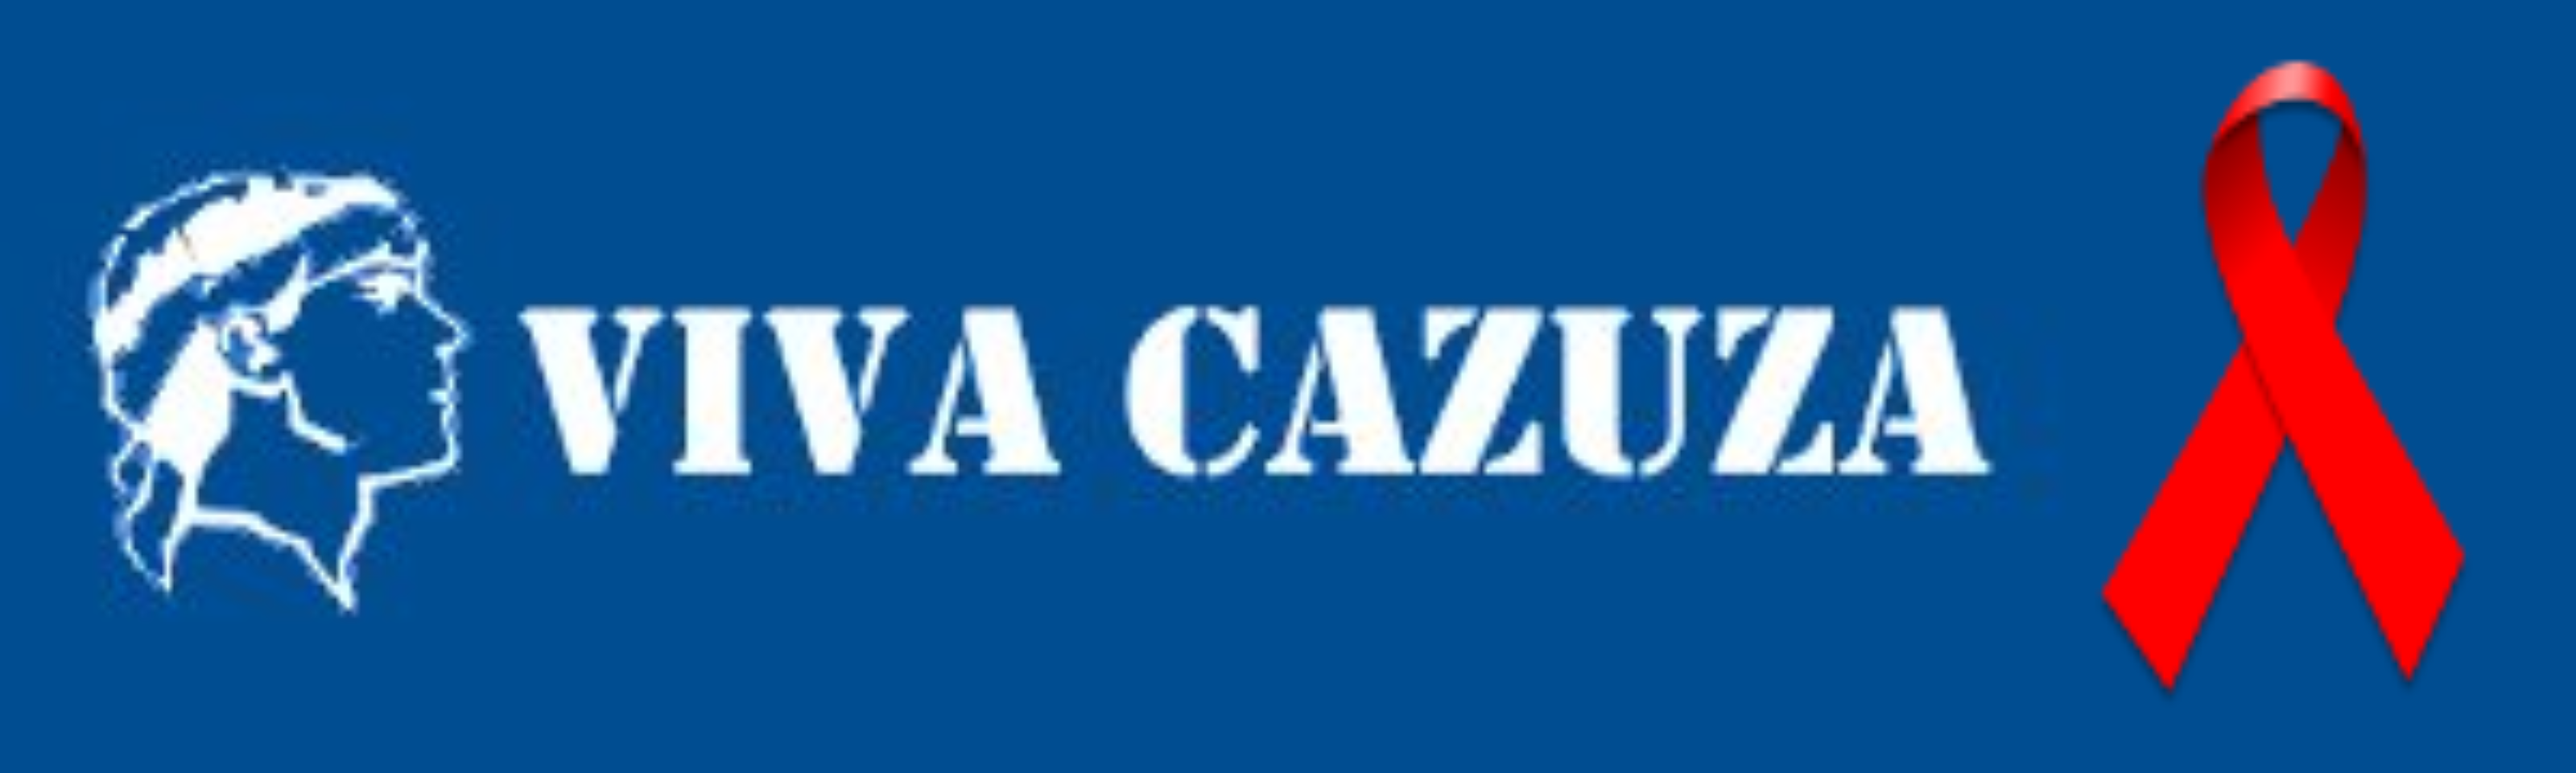 Viva Cazuza